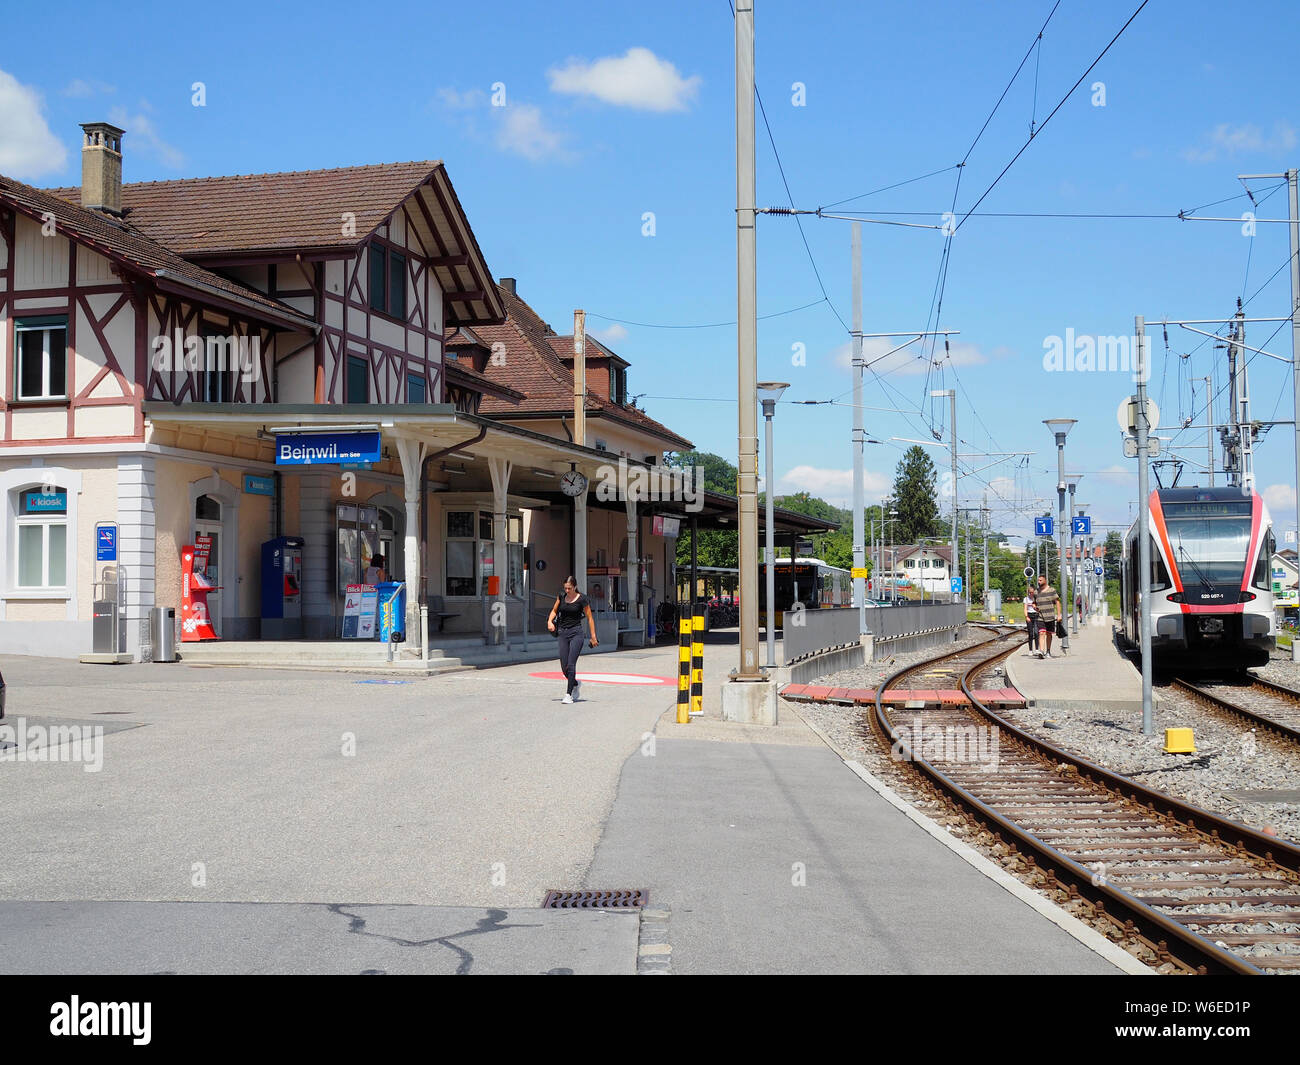 Bahnhof de Beinwil am See, André Tanneberger, Schweiz, Europa Banque D'Images